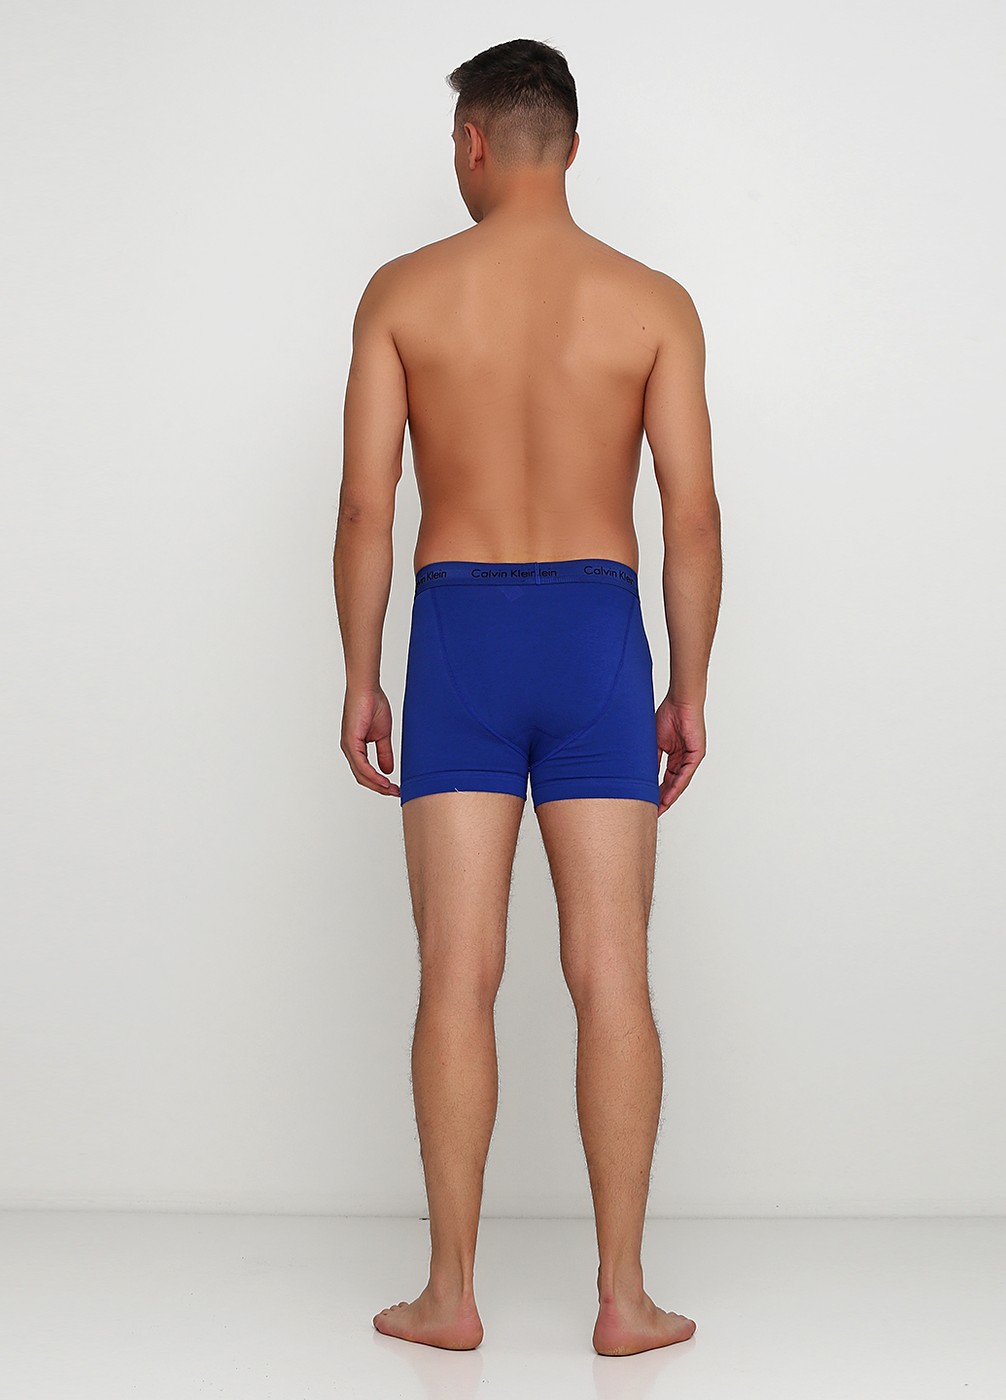 Набор нижнего белья Calvin Klein (3 шт.), XL, XL